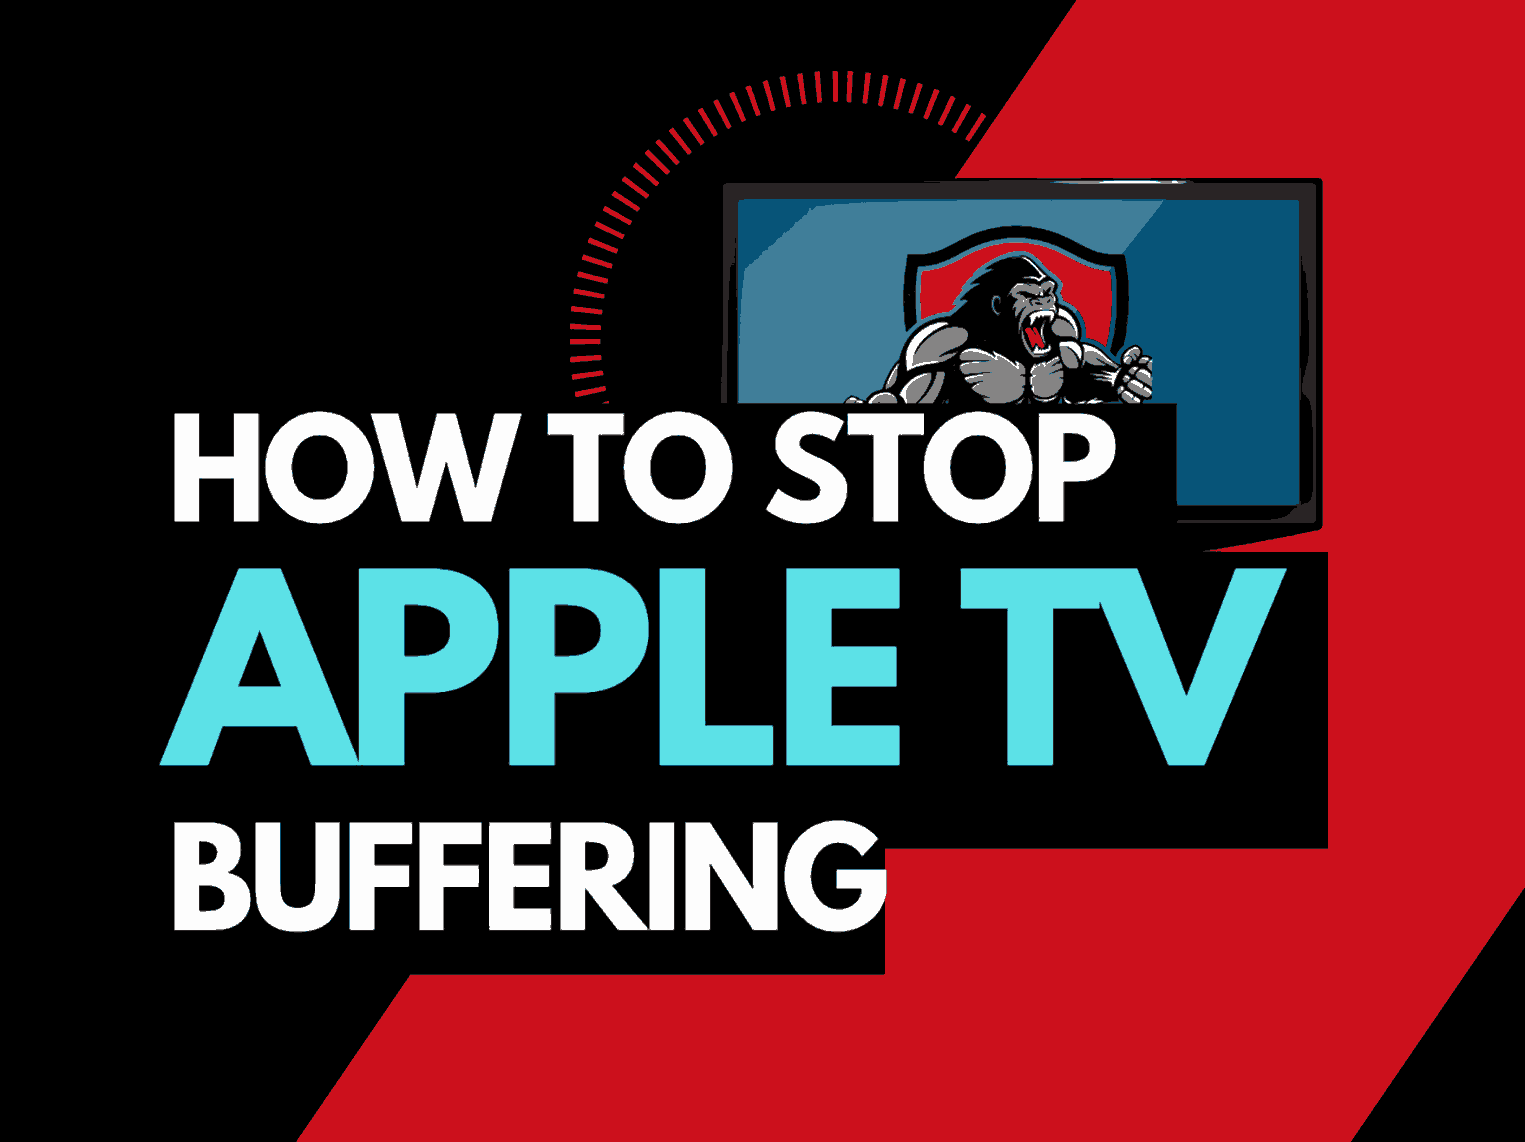 Apple TV buffering